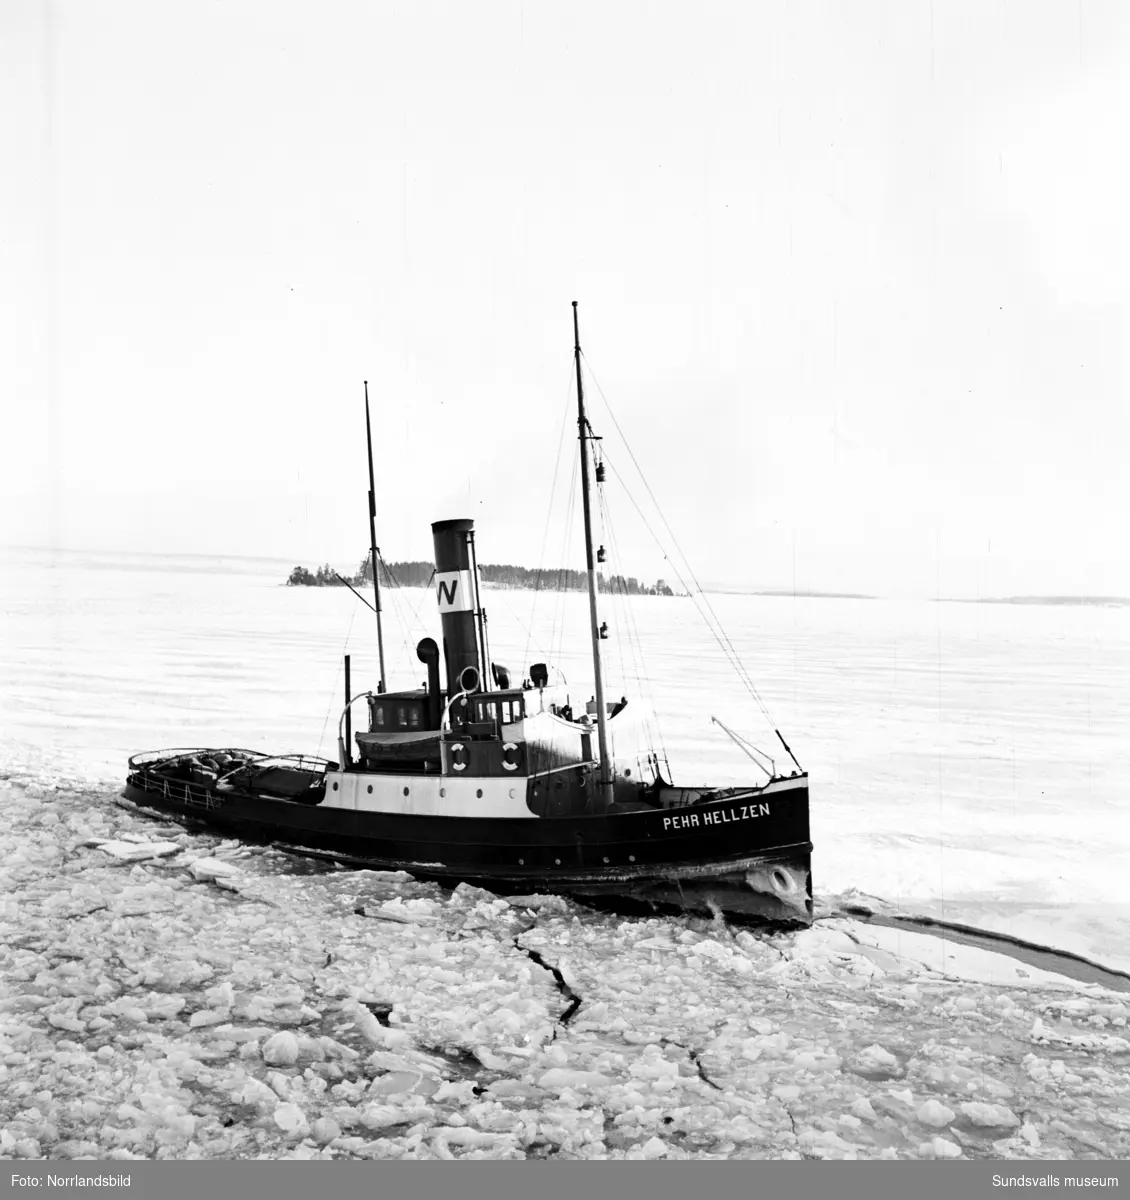 En grupp bilder med lotsarna och lotsbåten Pehr Hellzen i Vivstavarv och Fagervik.